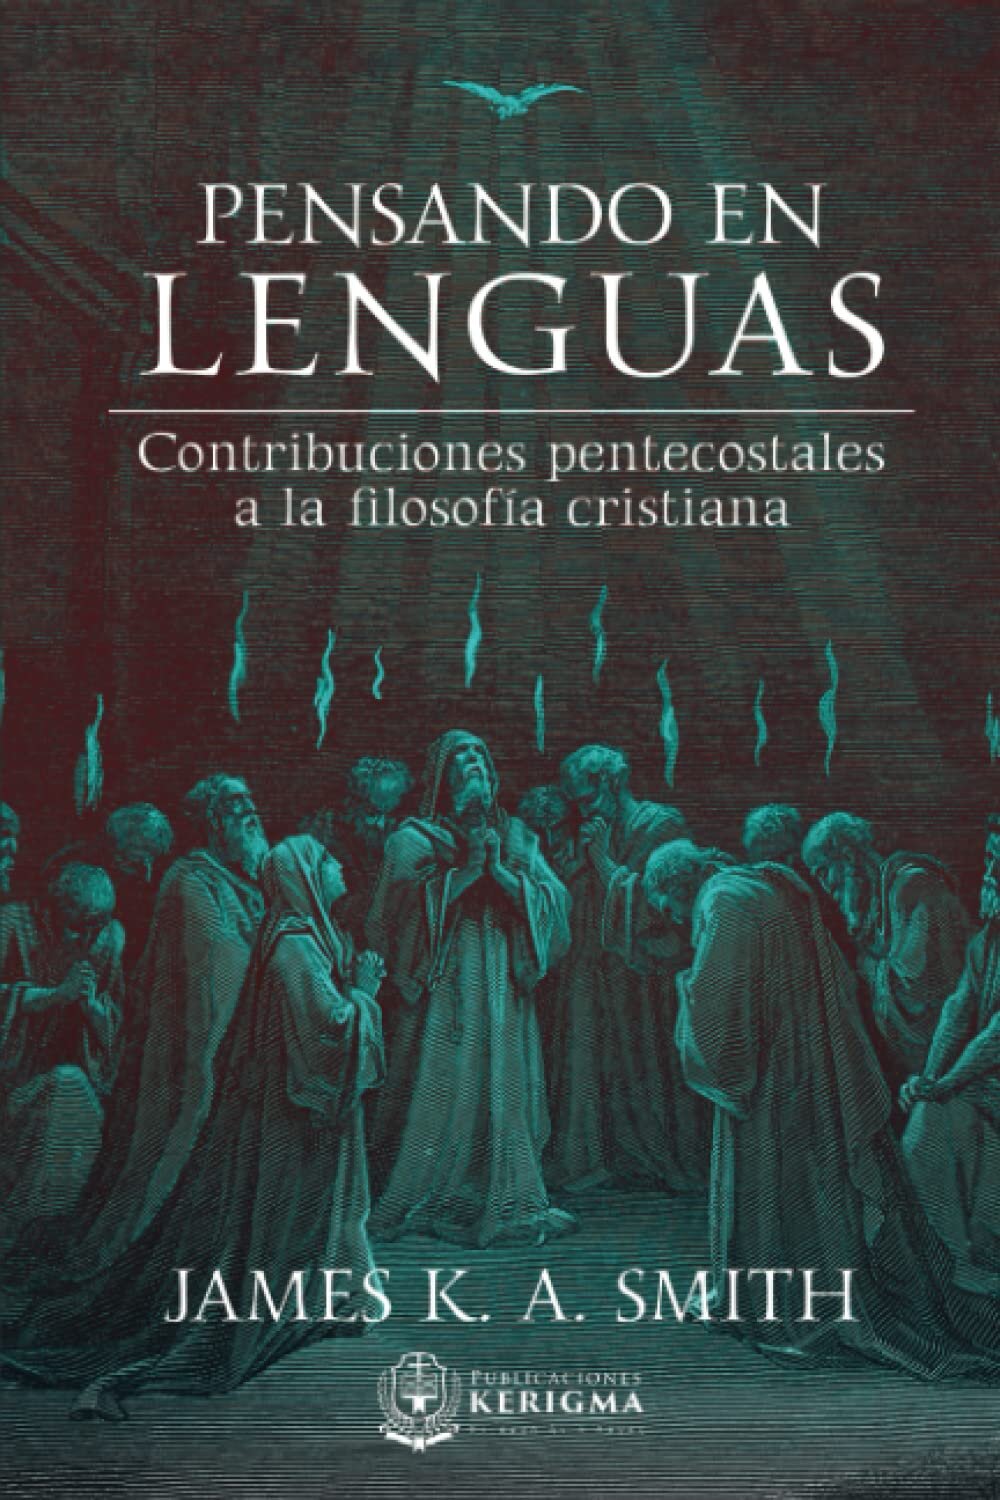 Pensando en lenguas: Contribuciones pentecostales a la filosofía cristiana